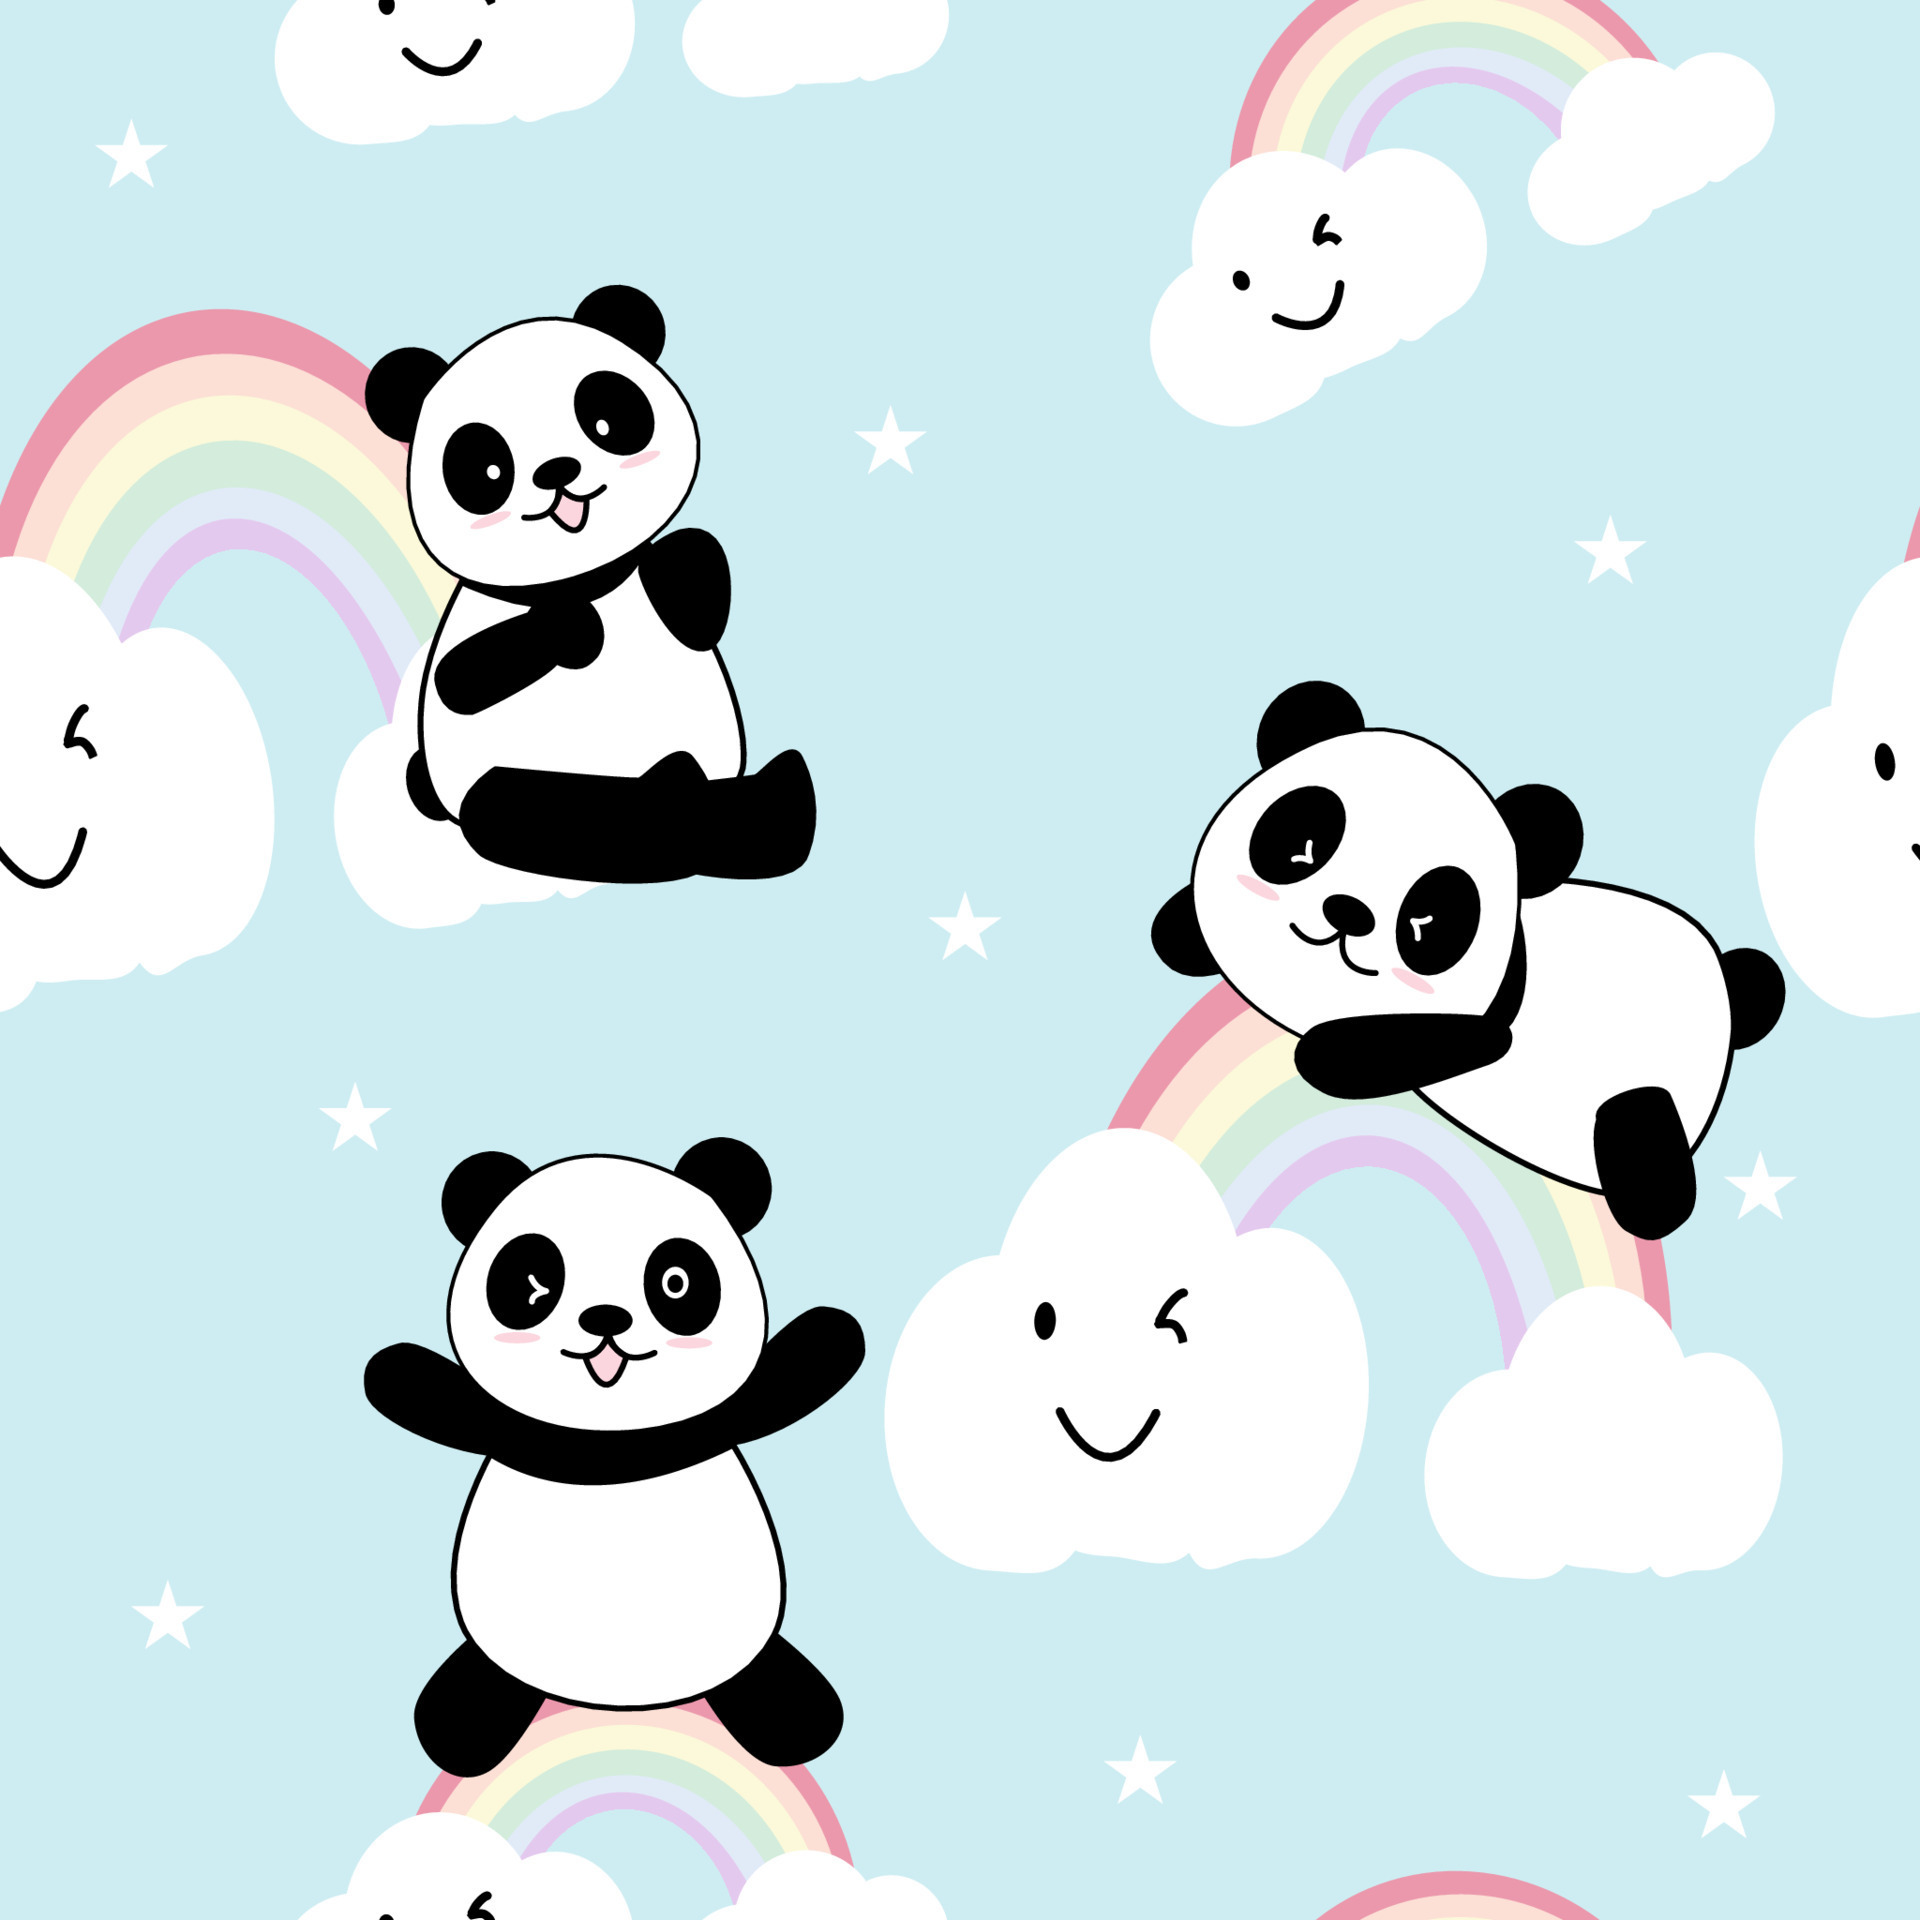 Premium Vector  Panda sitting love cute creative kawaii cartoon mascot logo